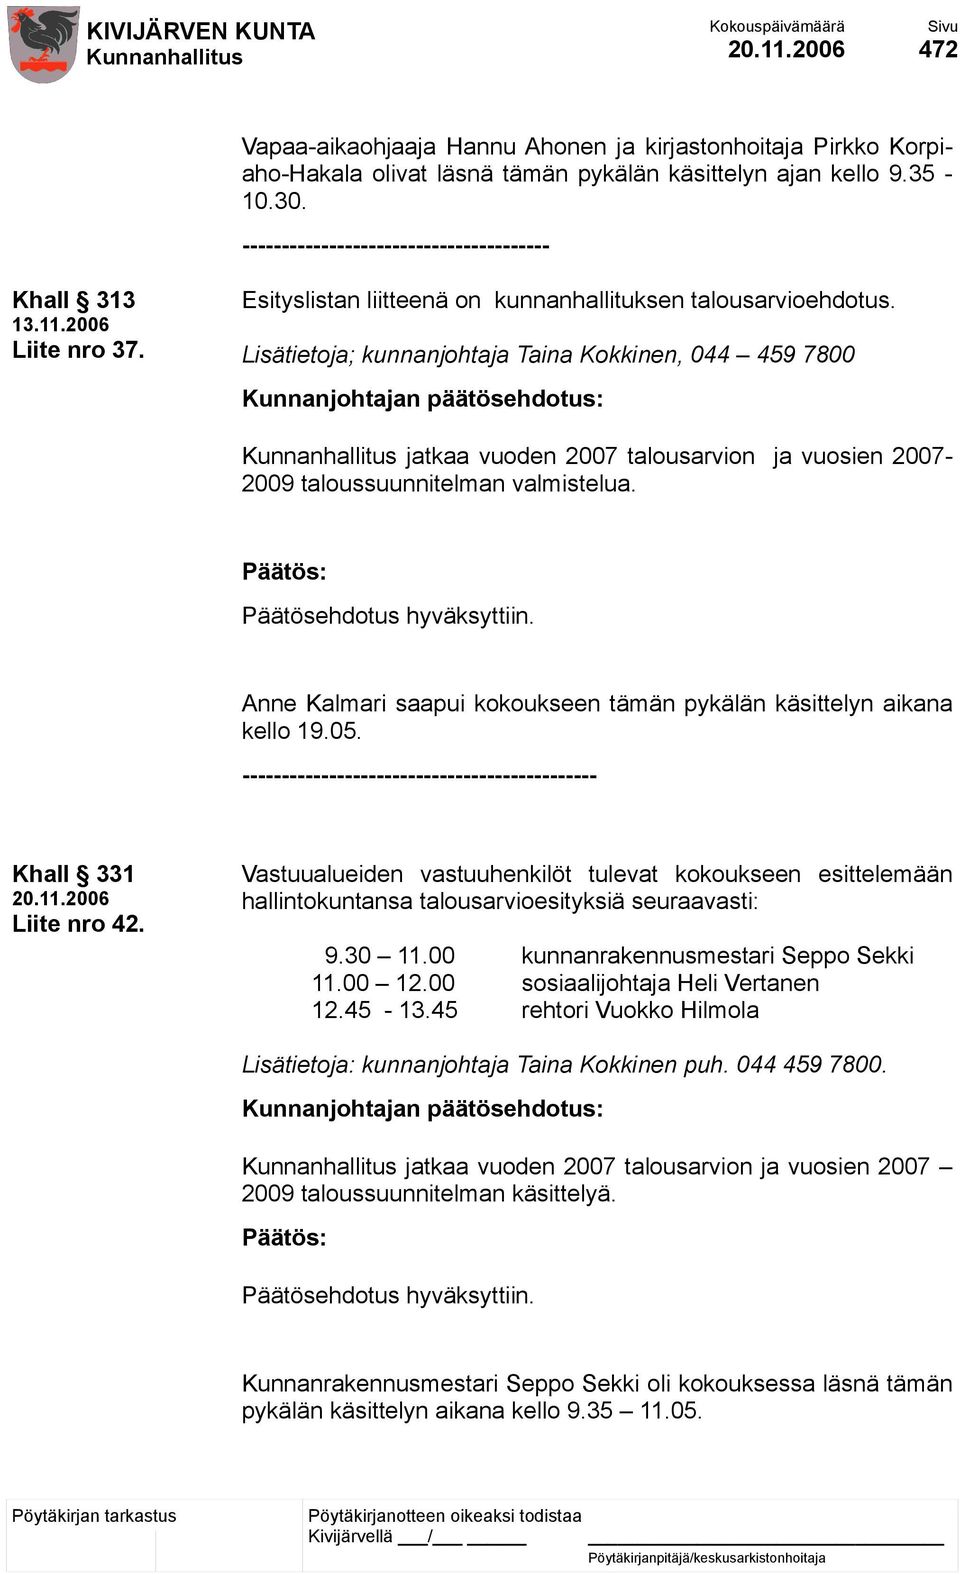 Lisätietoja; kunnanjohtaja Taina Kokkinen, 044 459 7800 jatkaa vuoden 2007 talousarvion ja vuosien 2007-2009 taloussuunnitelman valmistelua.